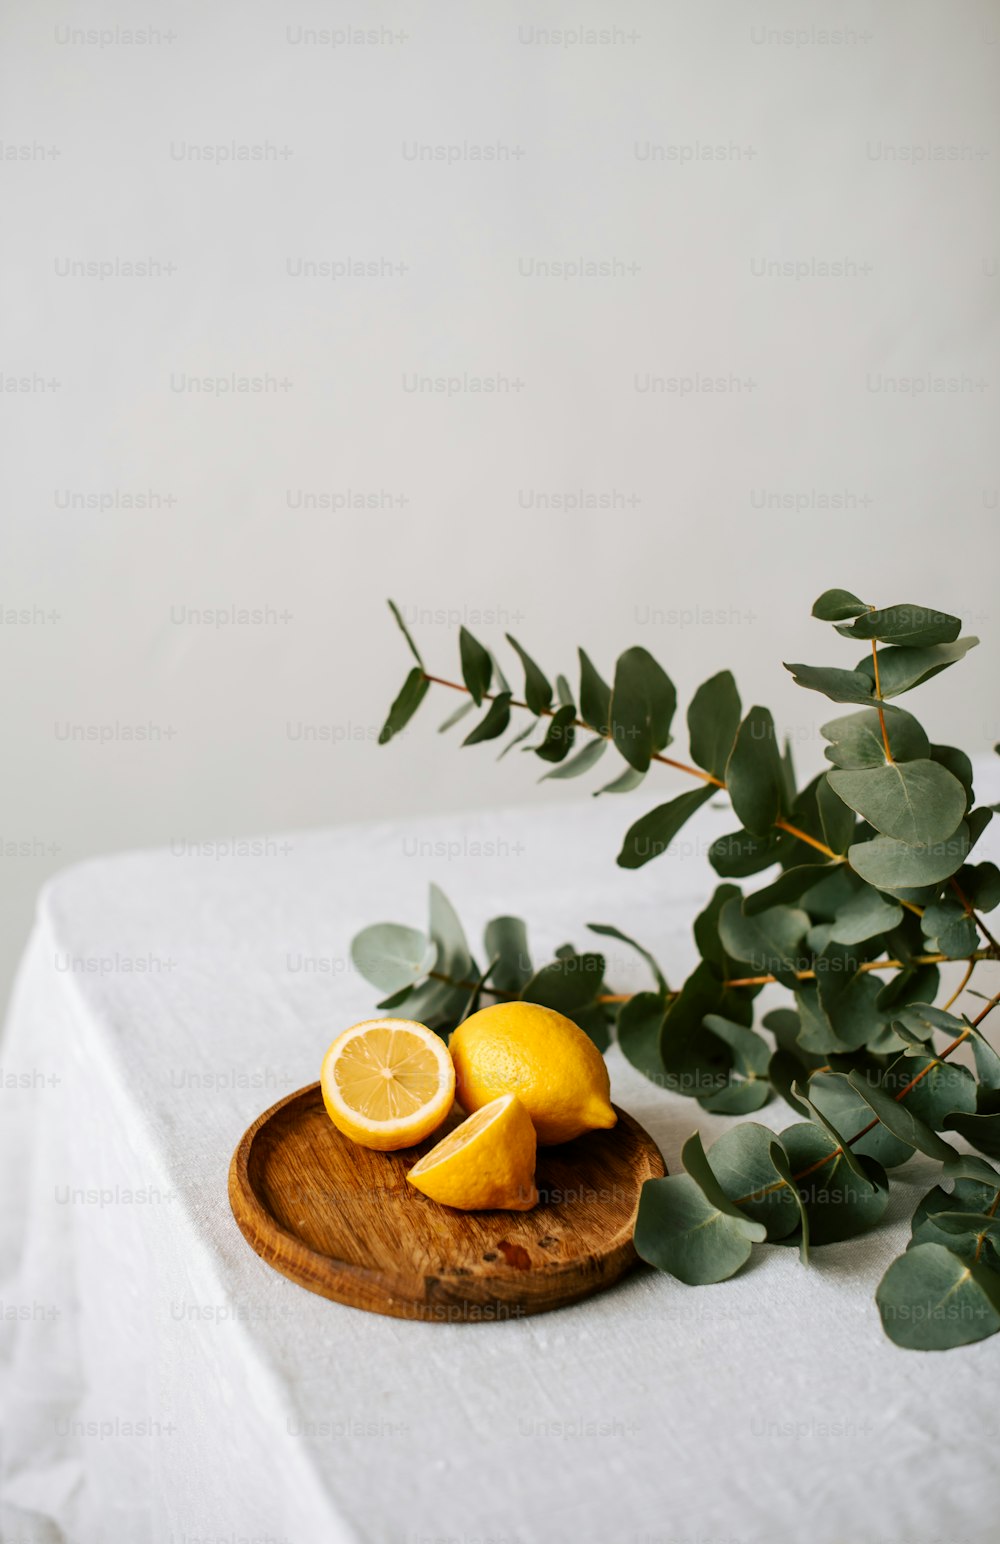 une assiette en bois garnie de citrons tranchés à côté d’une plante verte